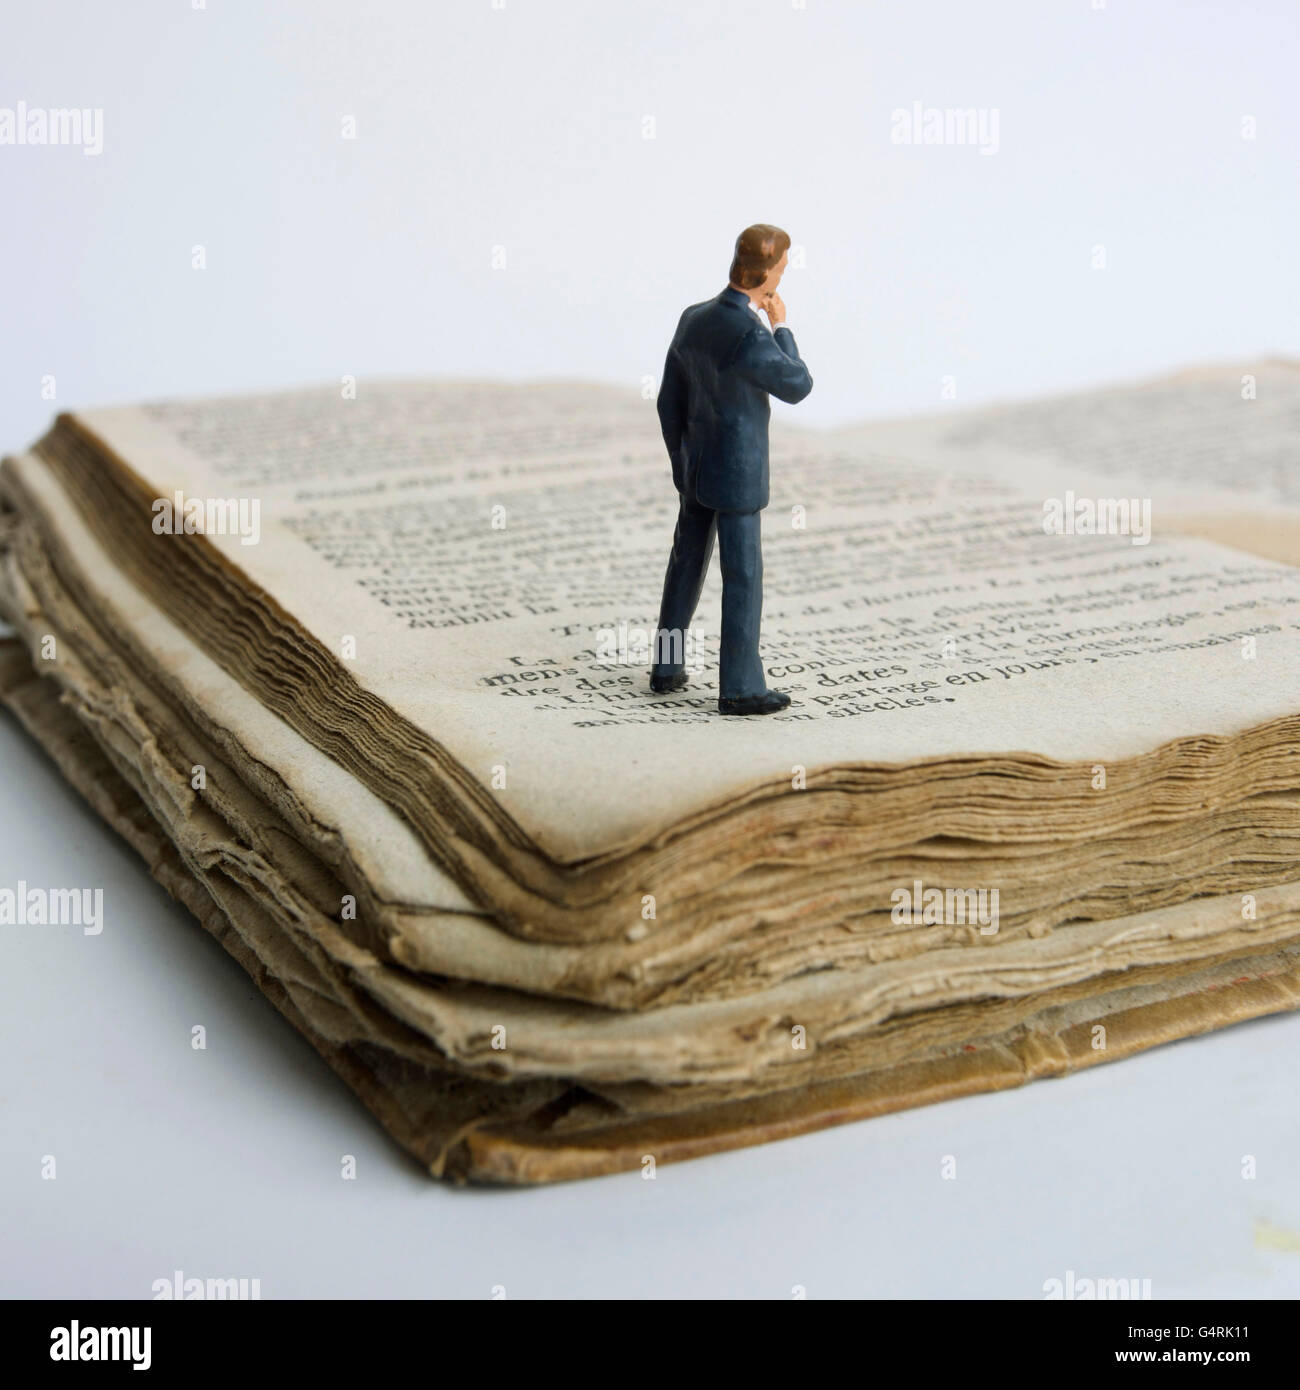 L'homme, miniature, figurine, debout sur un vieux livre Banque D'Images